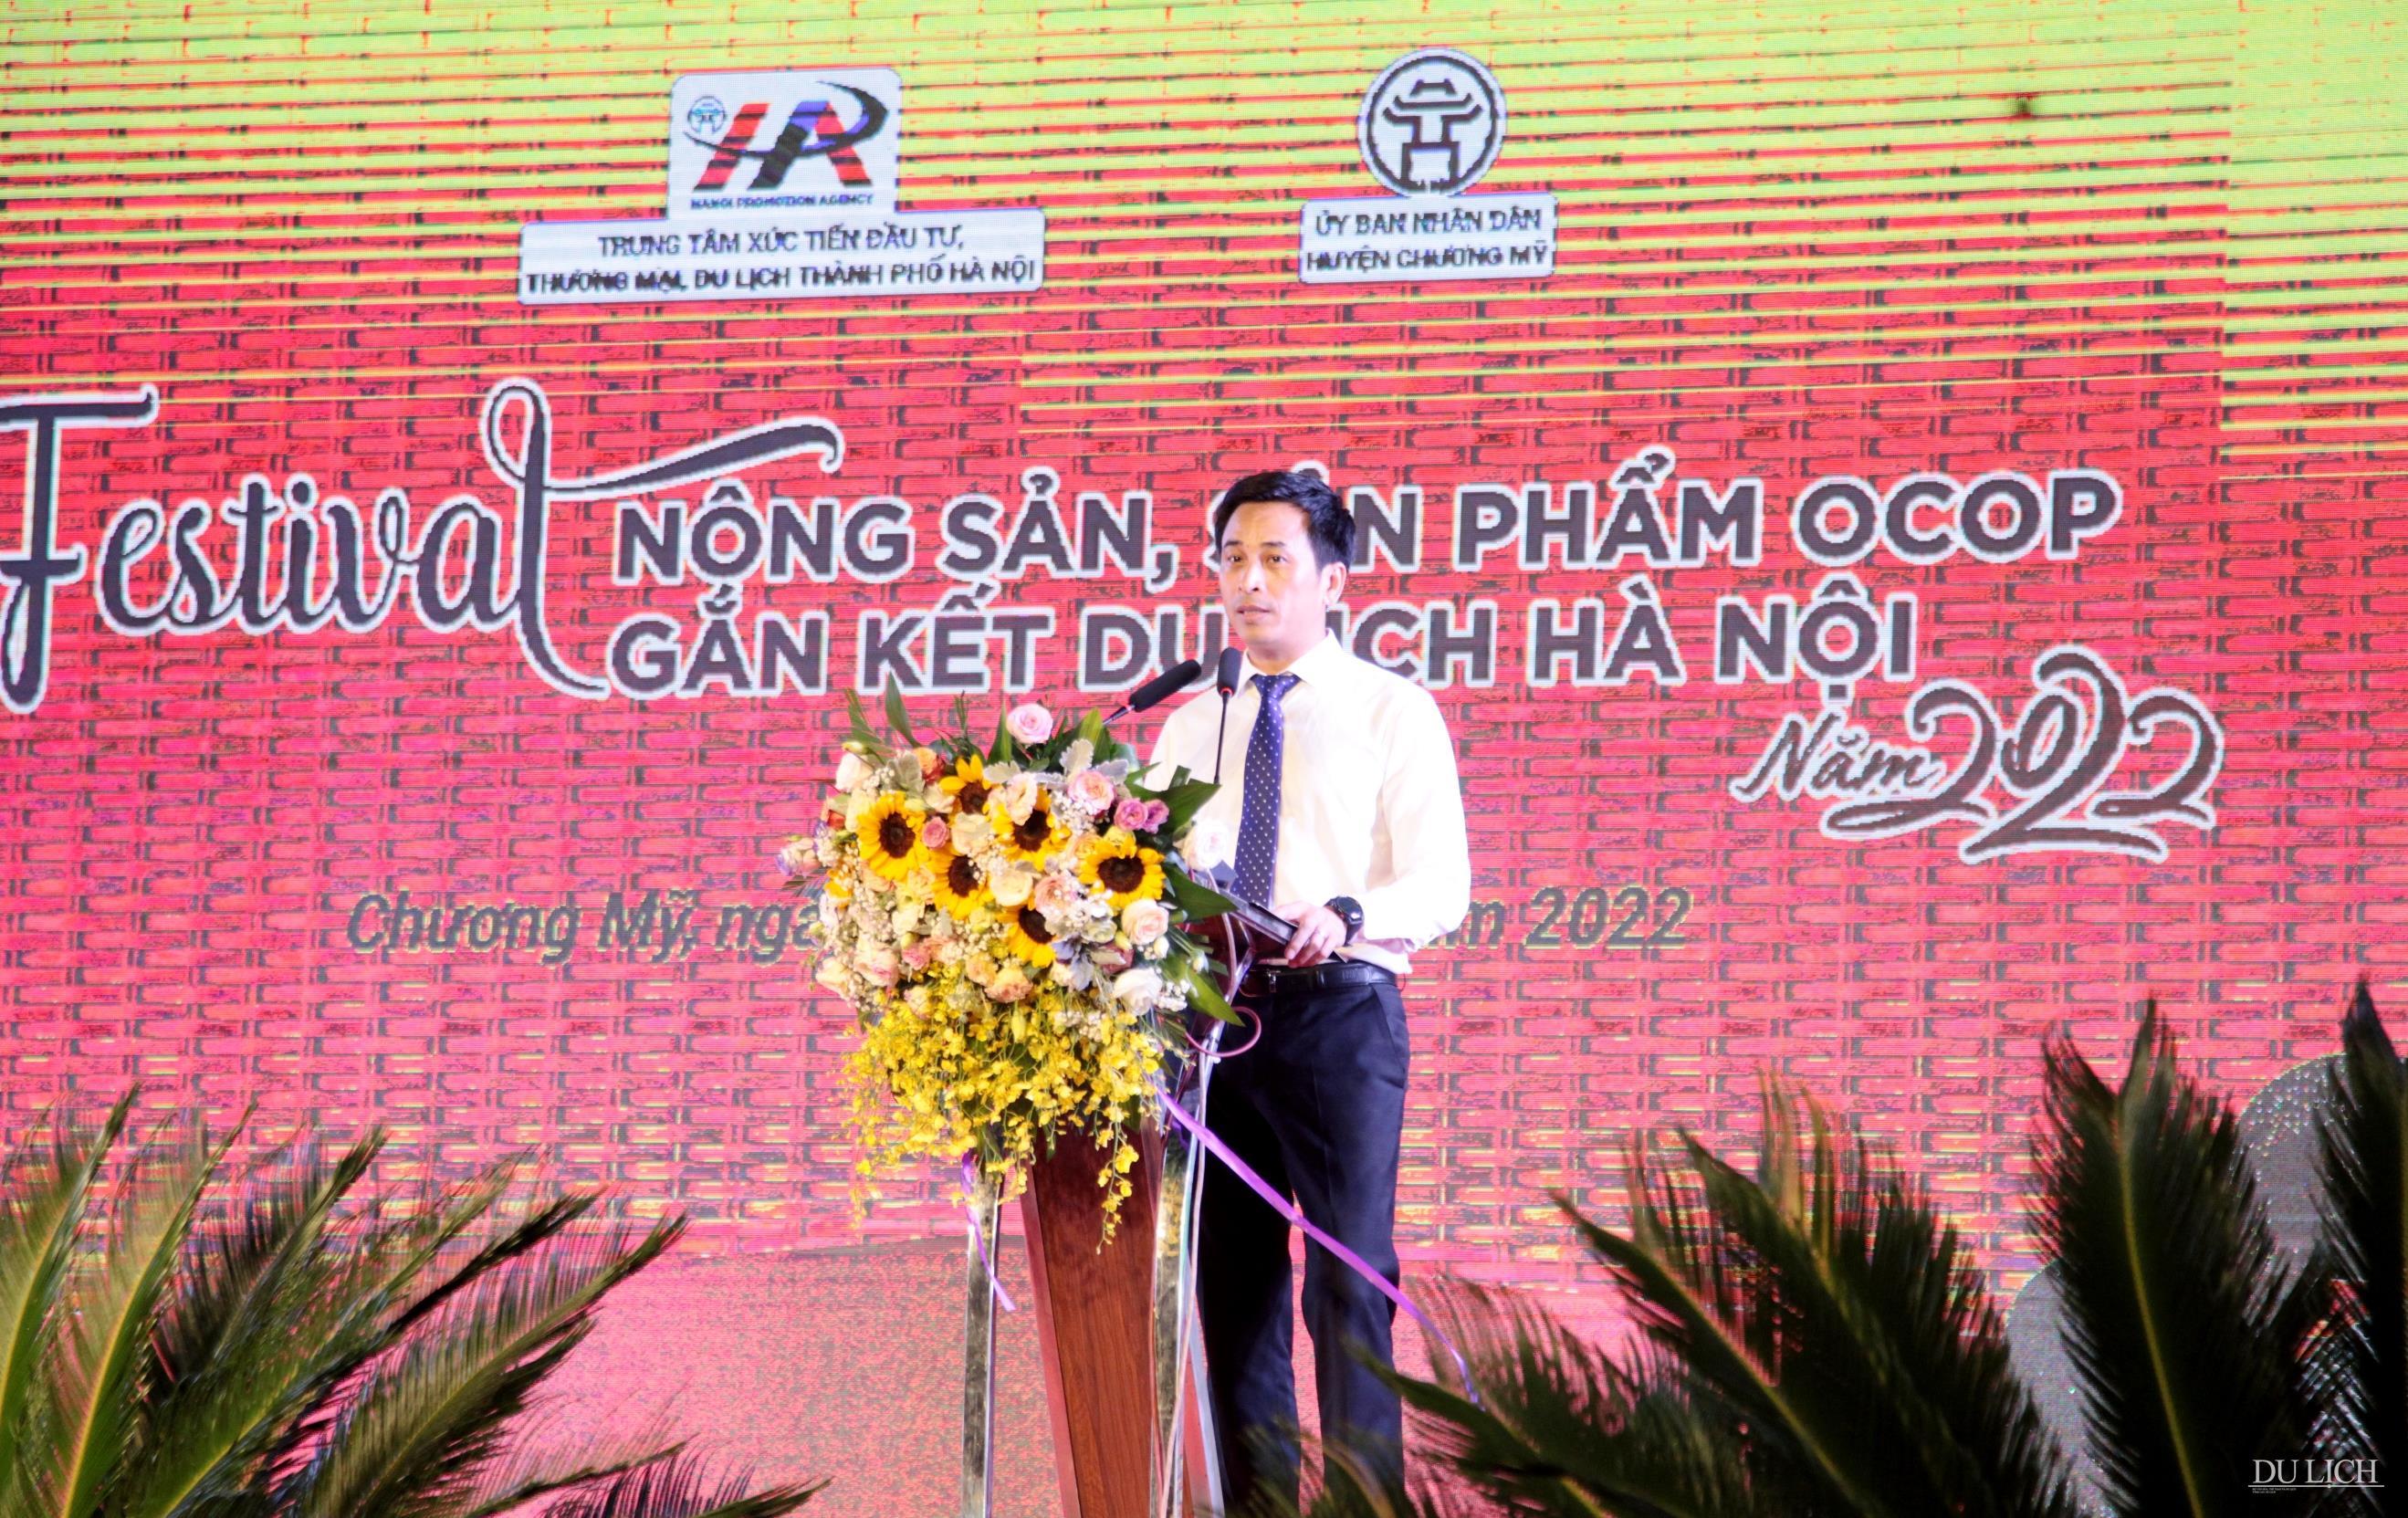 Giám đốc HPA Nguyễn Ánh Dương phát biểu khai mạc